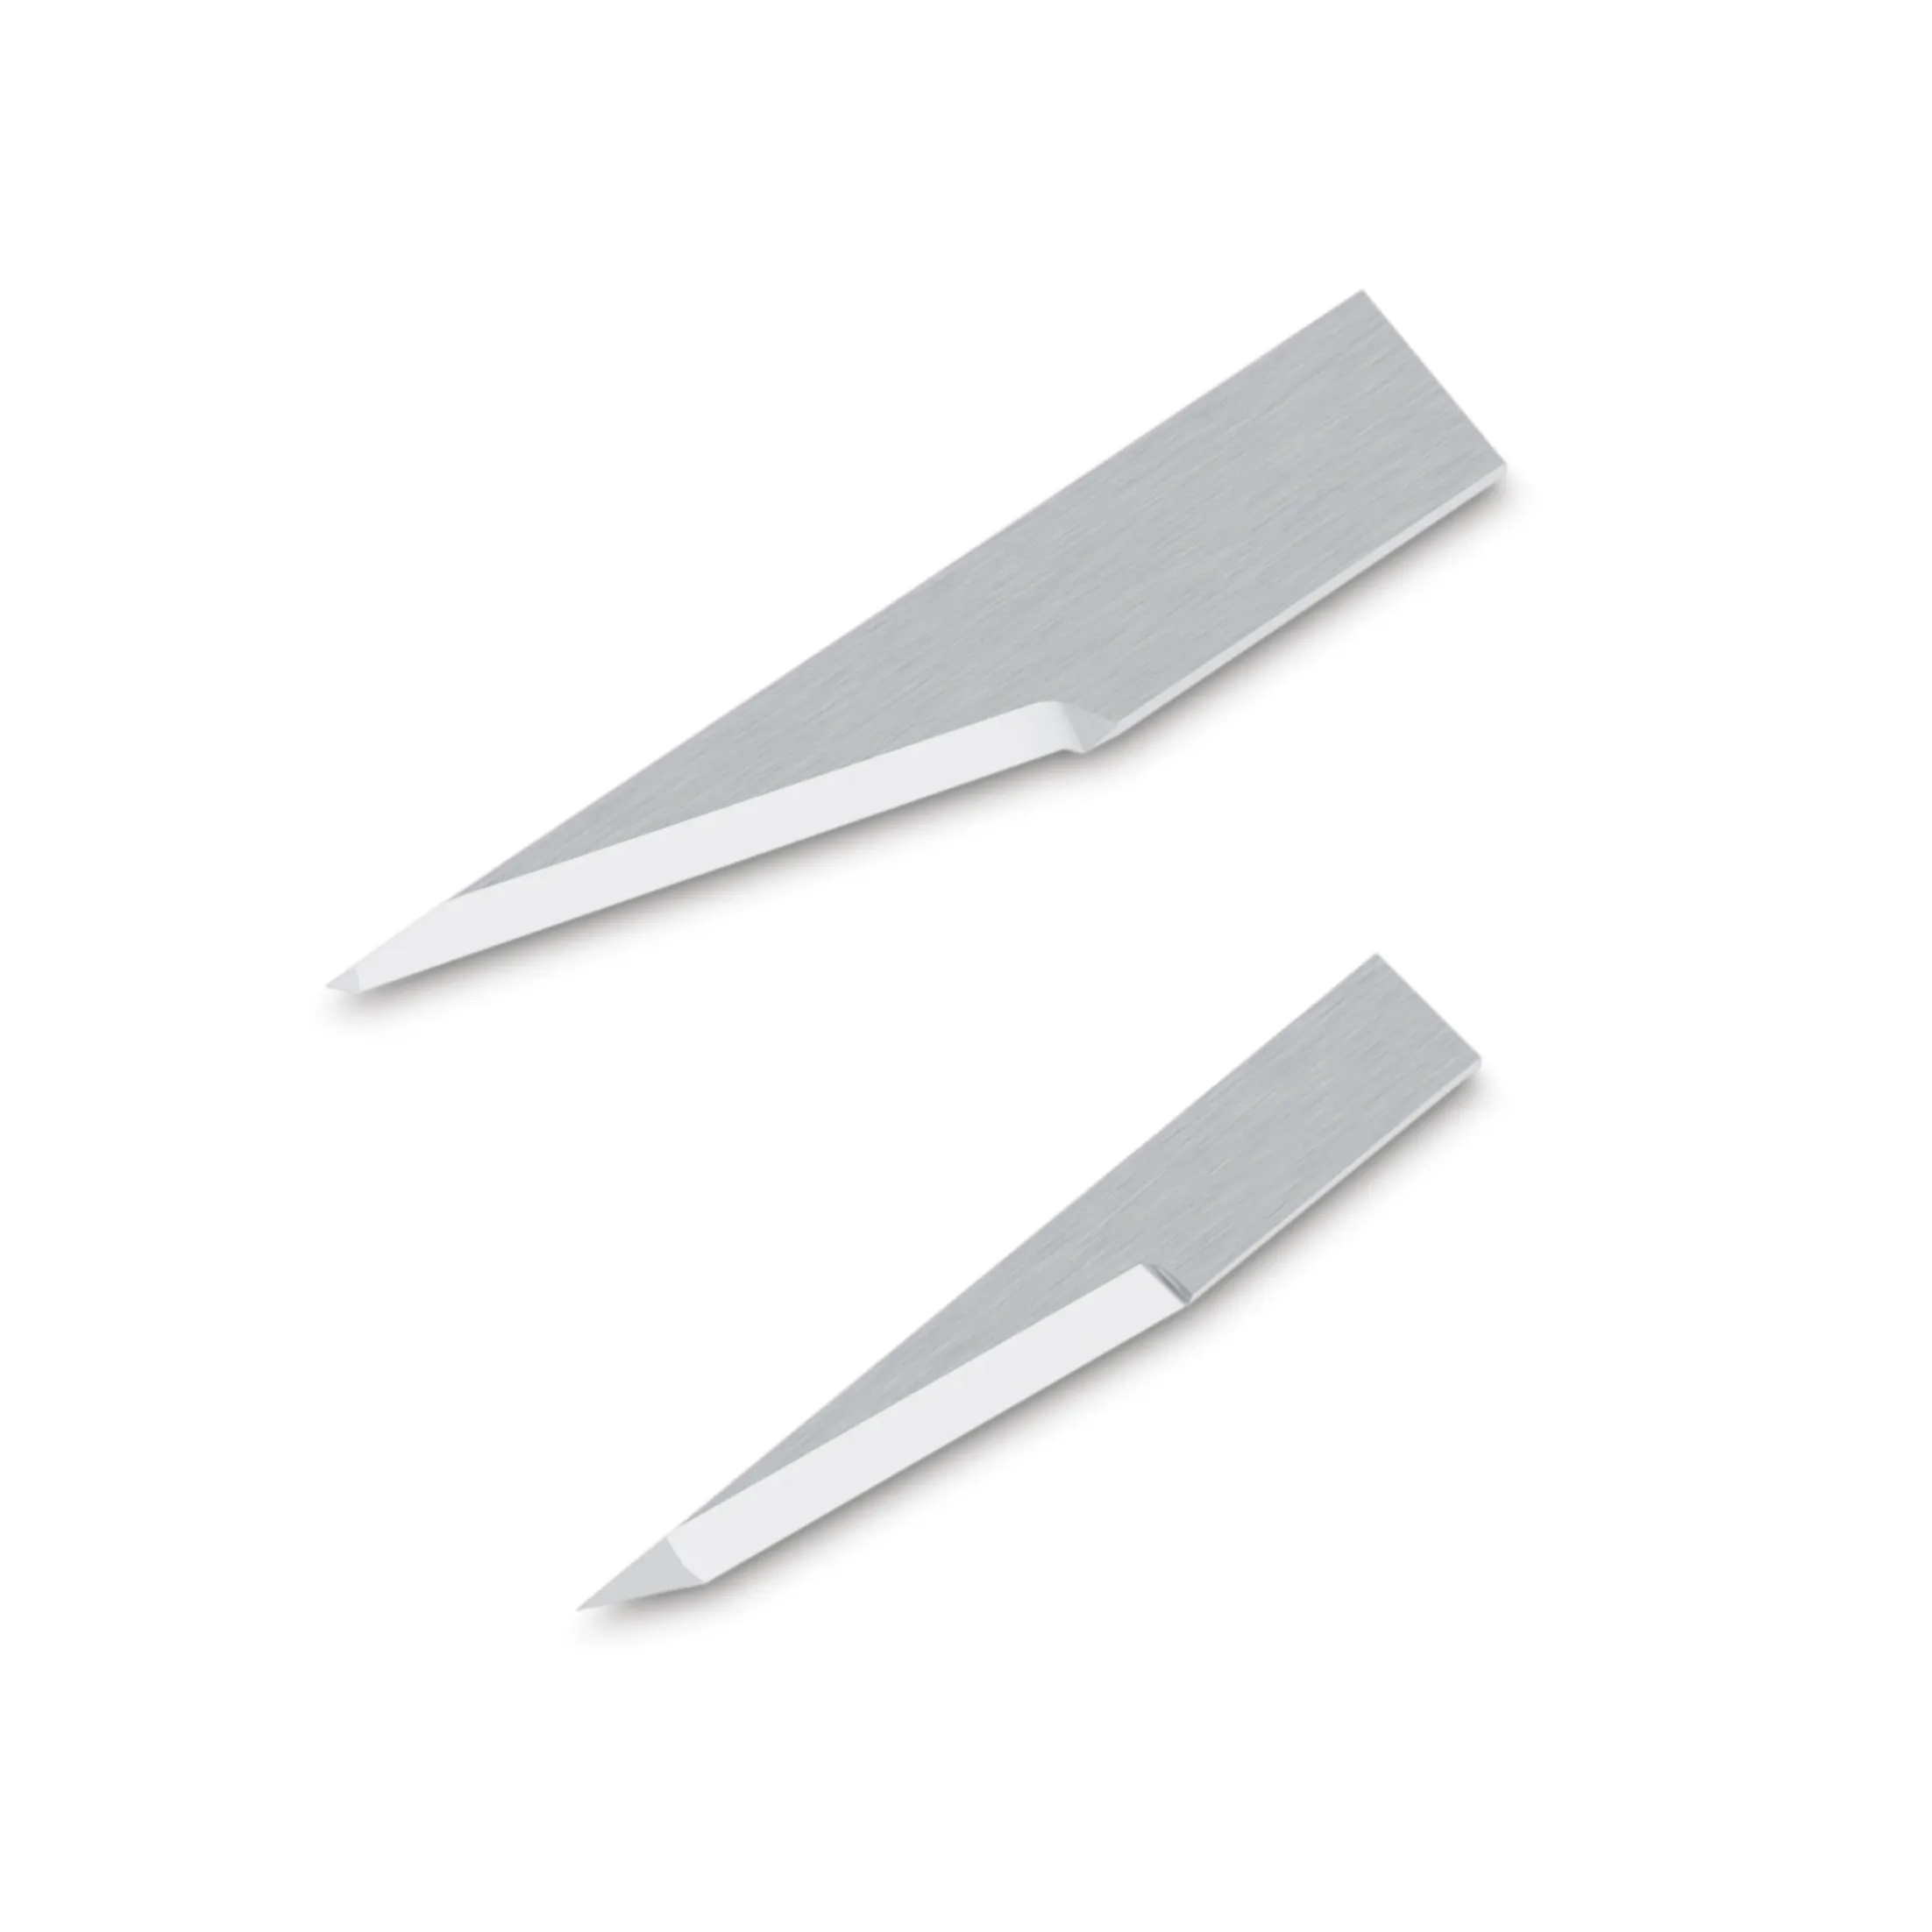 شفرات سحب سكاكين متذبذبة عالية الجودة شفرات قطع V Z11 ، Z12 ، Z13 ، Z16 ، Z17 ، Z20 ، Z21 مماثلة لراسمة zundd